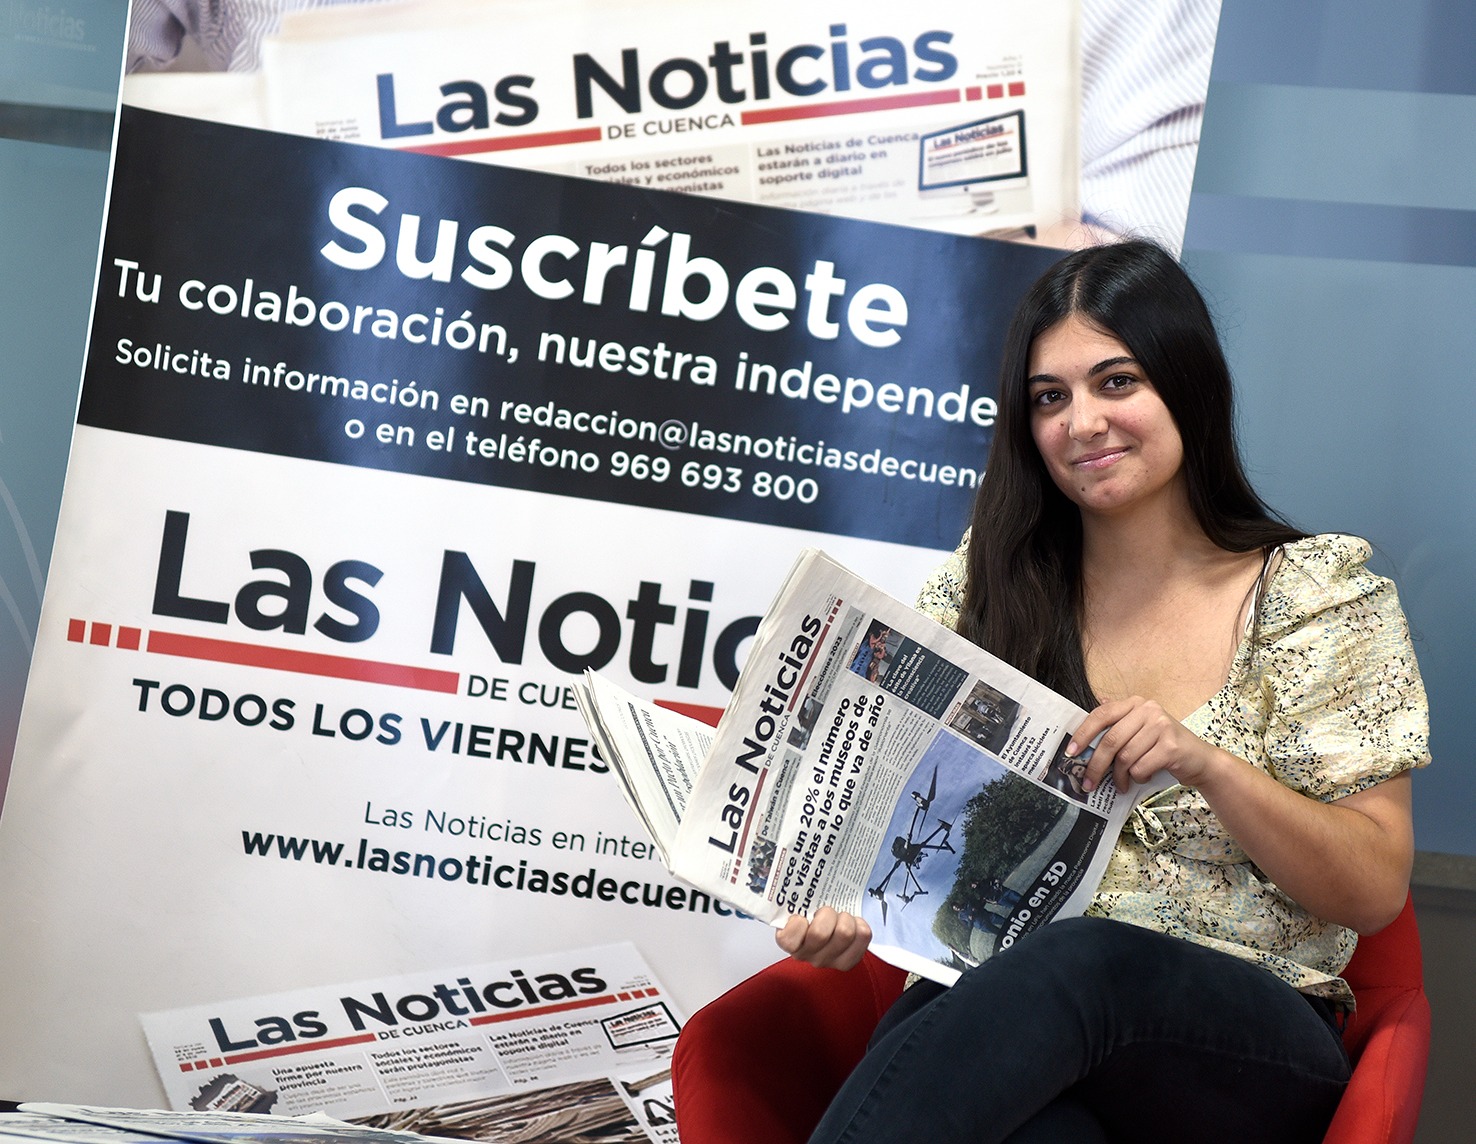 María Valverde Las Noticias de Cuenca